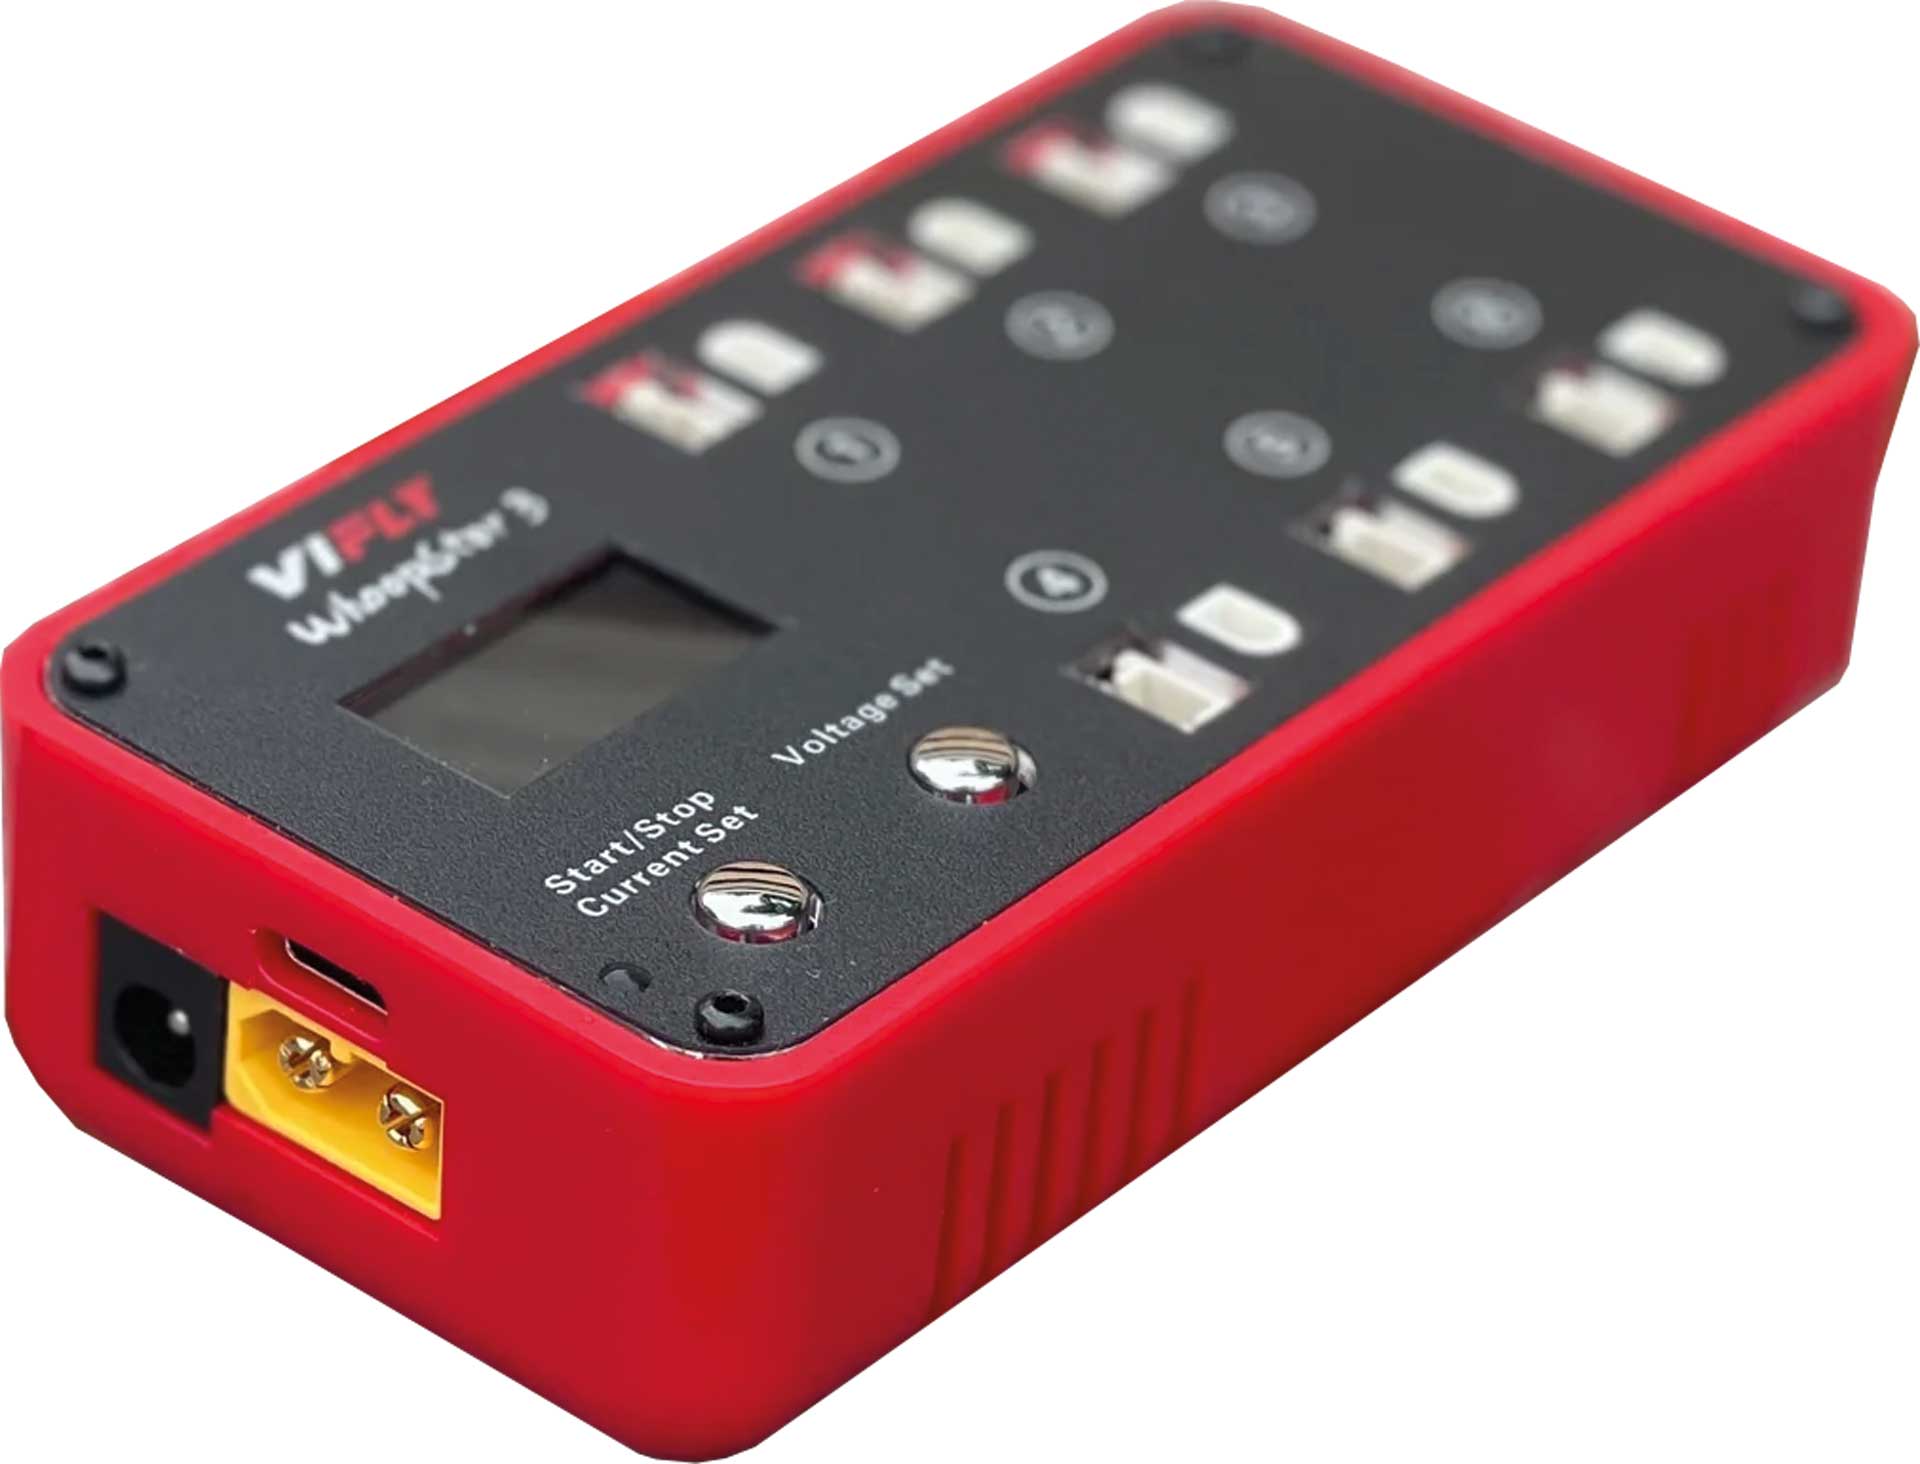 VIFLY WhoopStor 3 1S Rot Akku-Ladegerät und Entladegerät mit PH2.0 , BT2.0 Anschlüssen